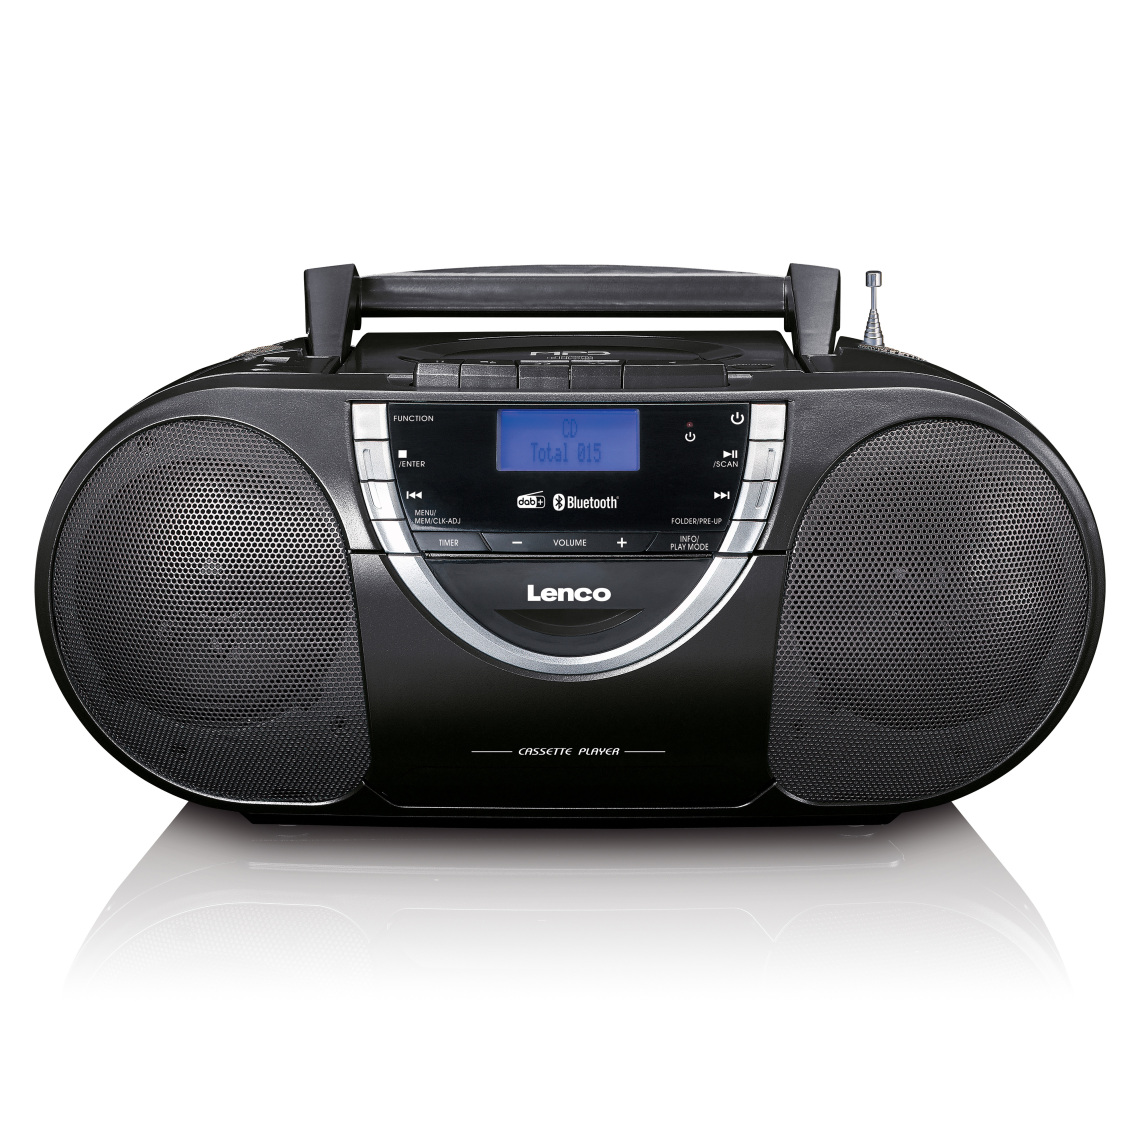 Lenco - Radio portable lecteur CD avec DAB+ et casette SCD-6900BK Noir-Argent - Radio